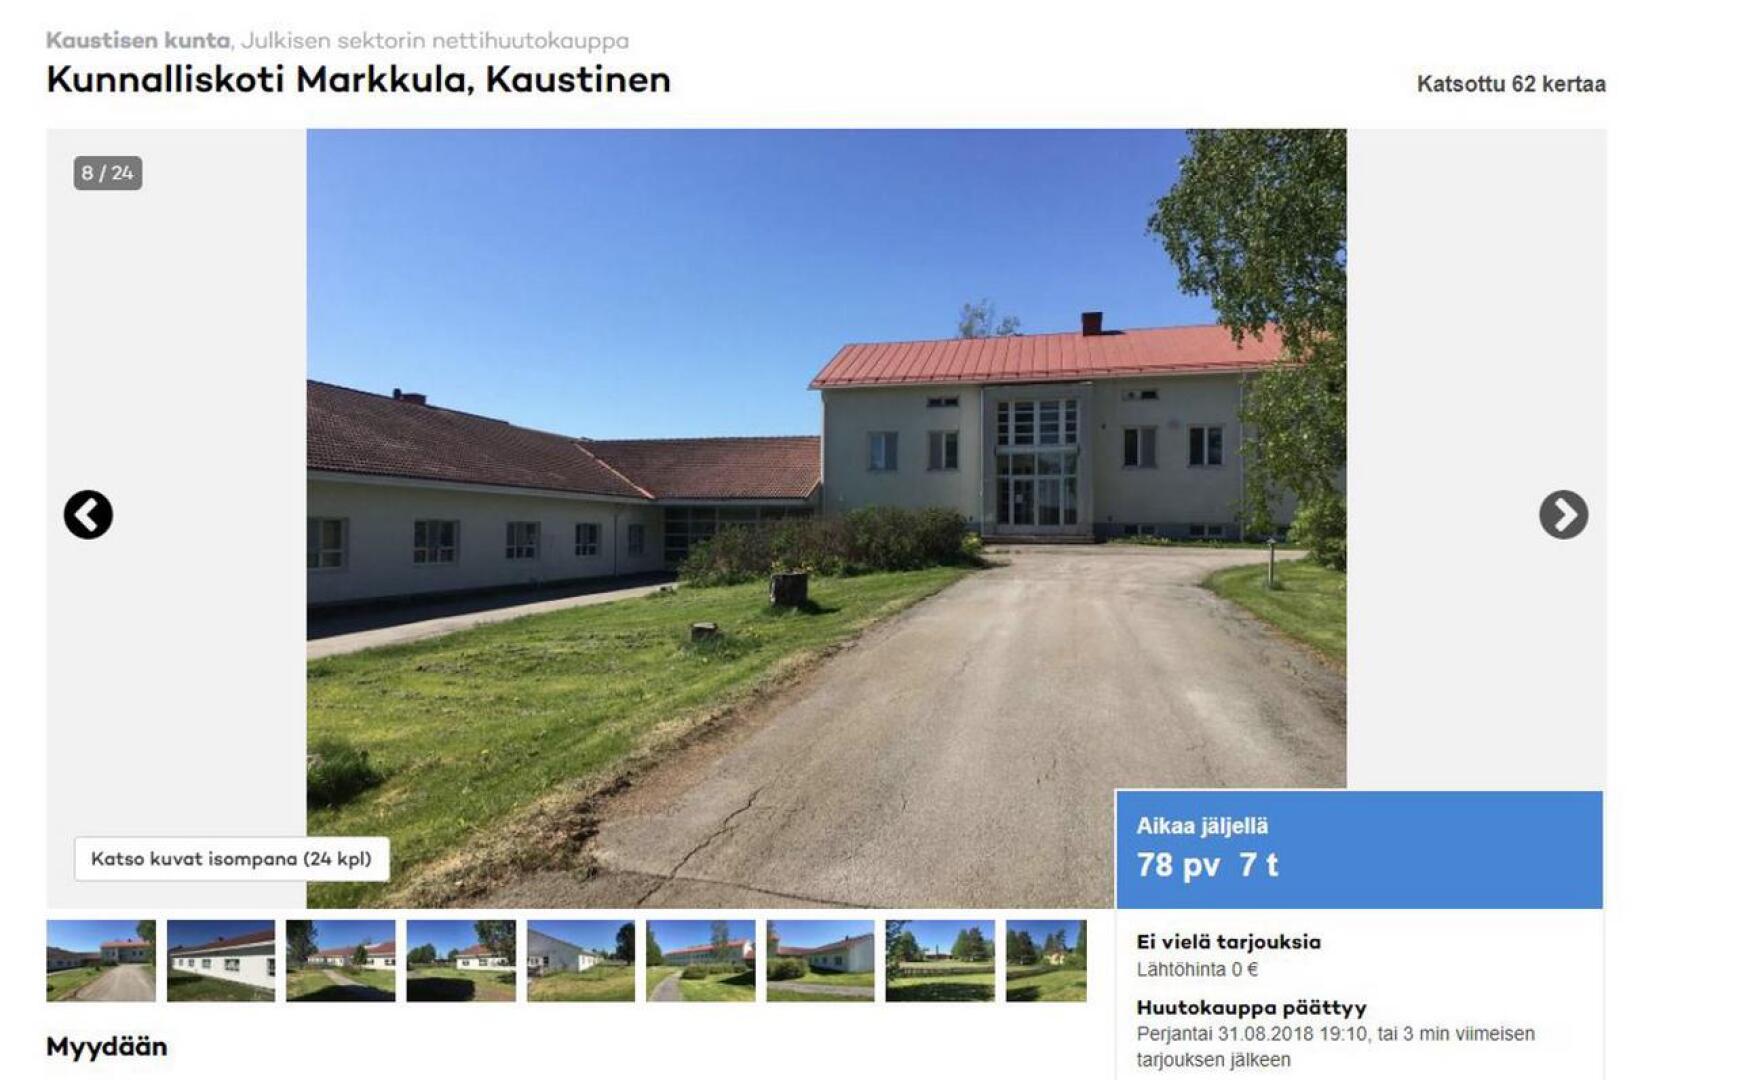 Kuvankaappaus Markkulan kunnalliskodin myynti-ilmoituksesta. 